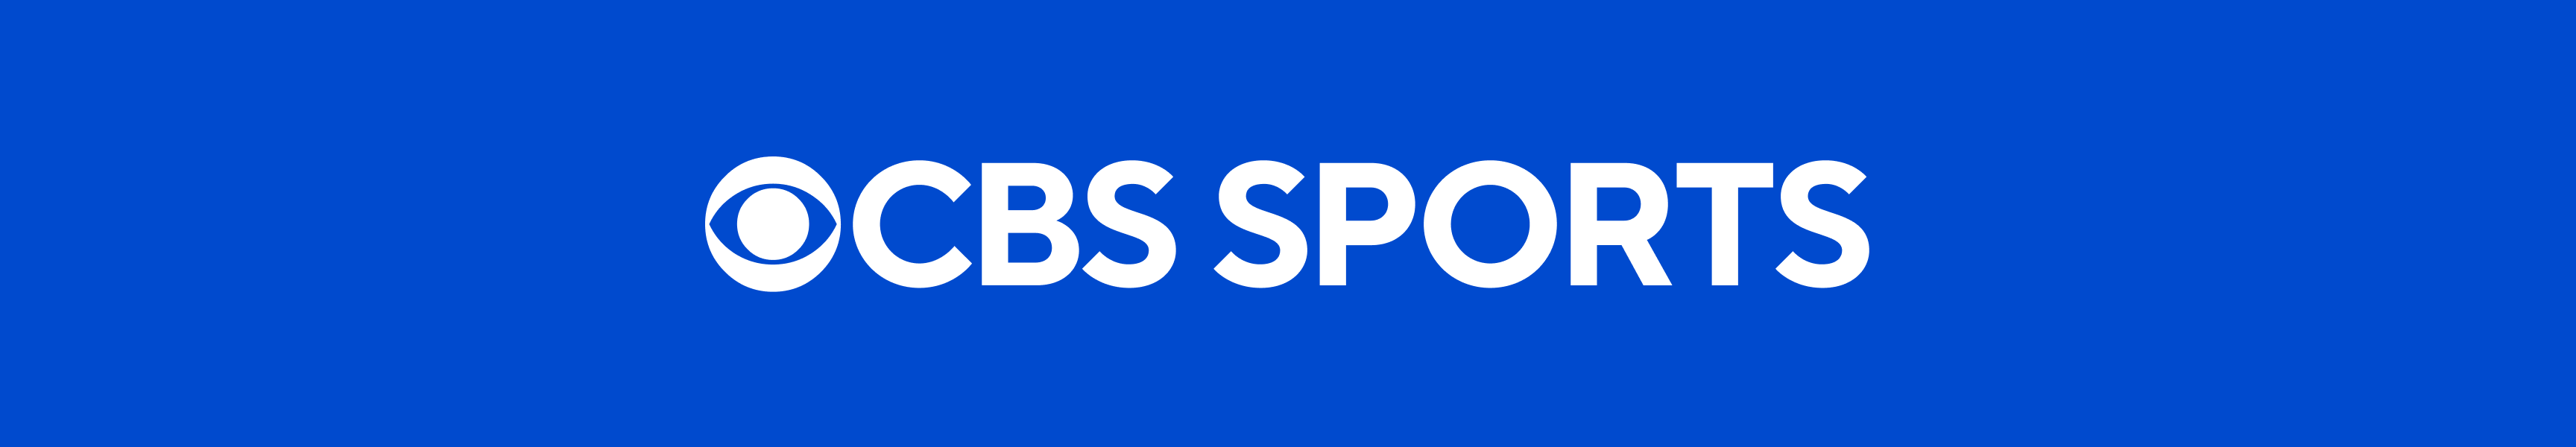 CBS Sports Tank Tops